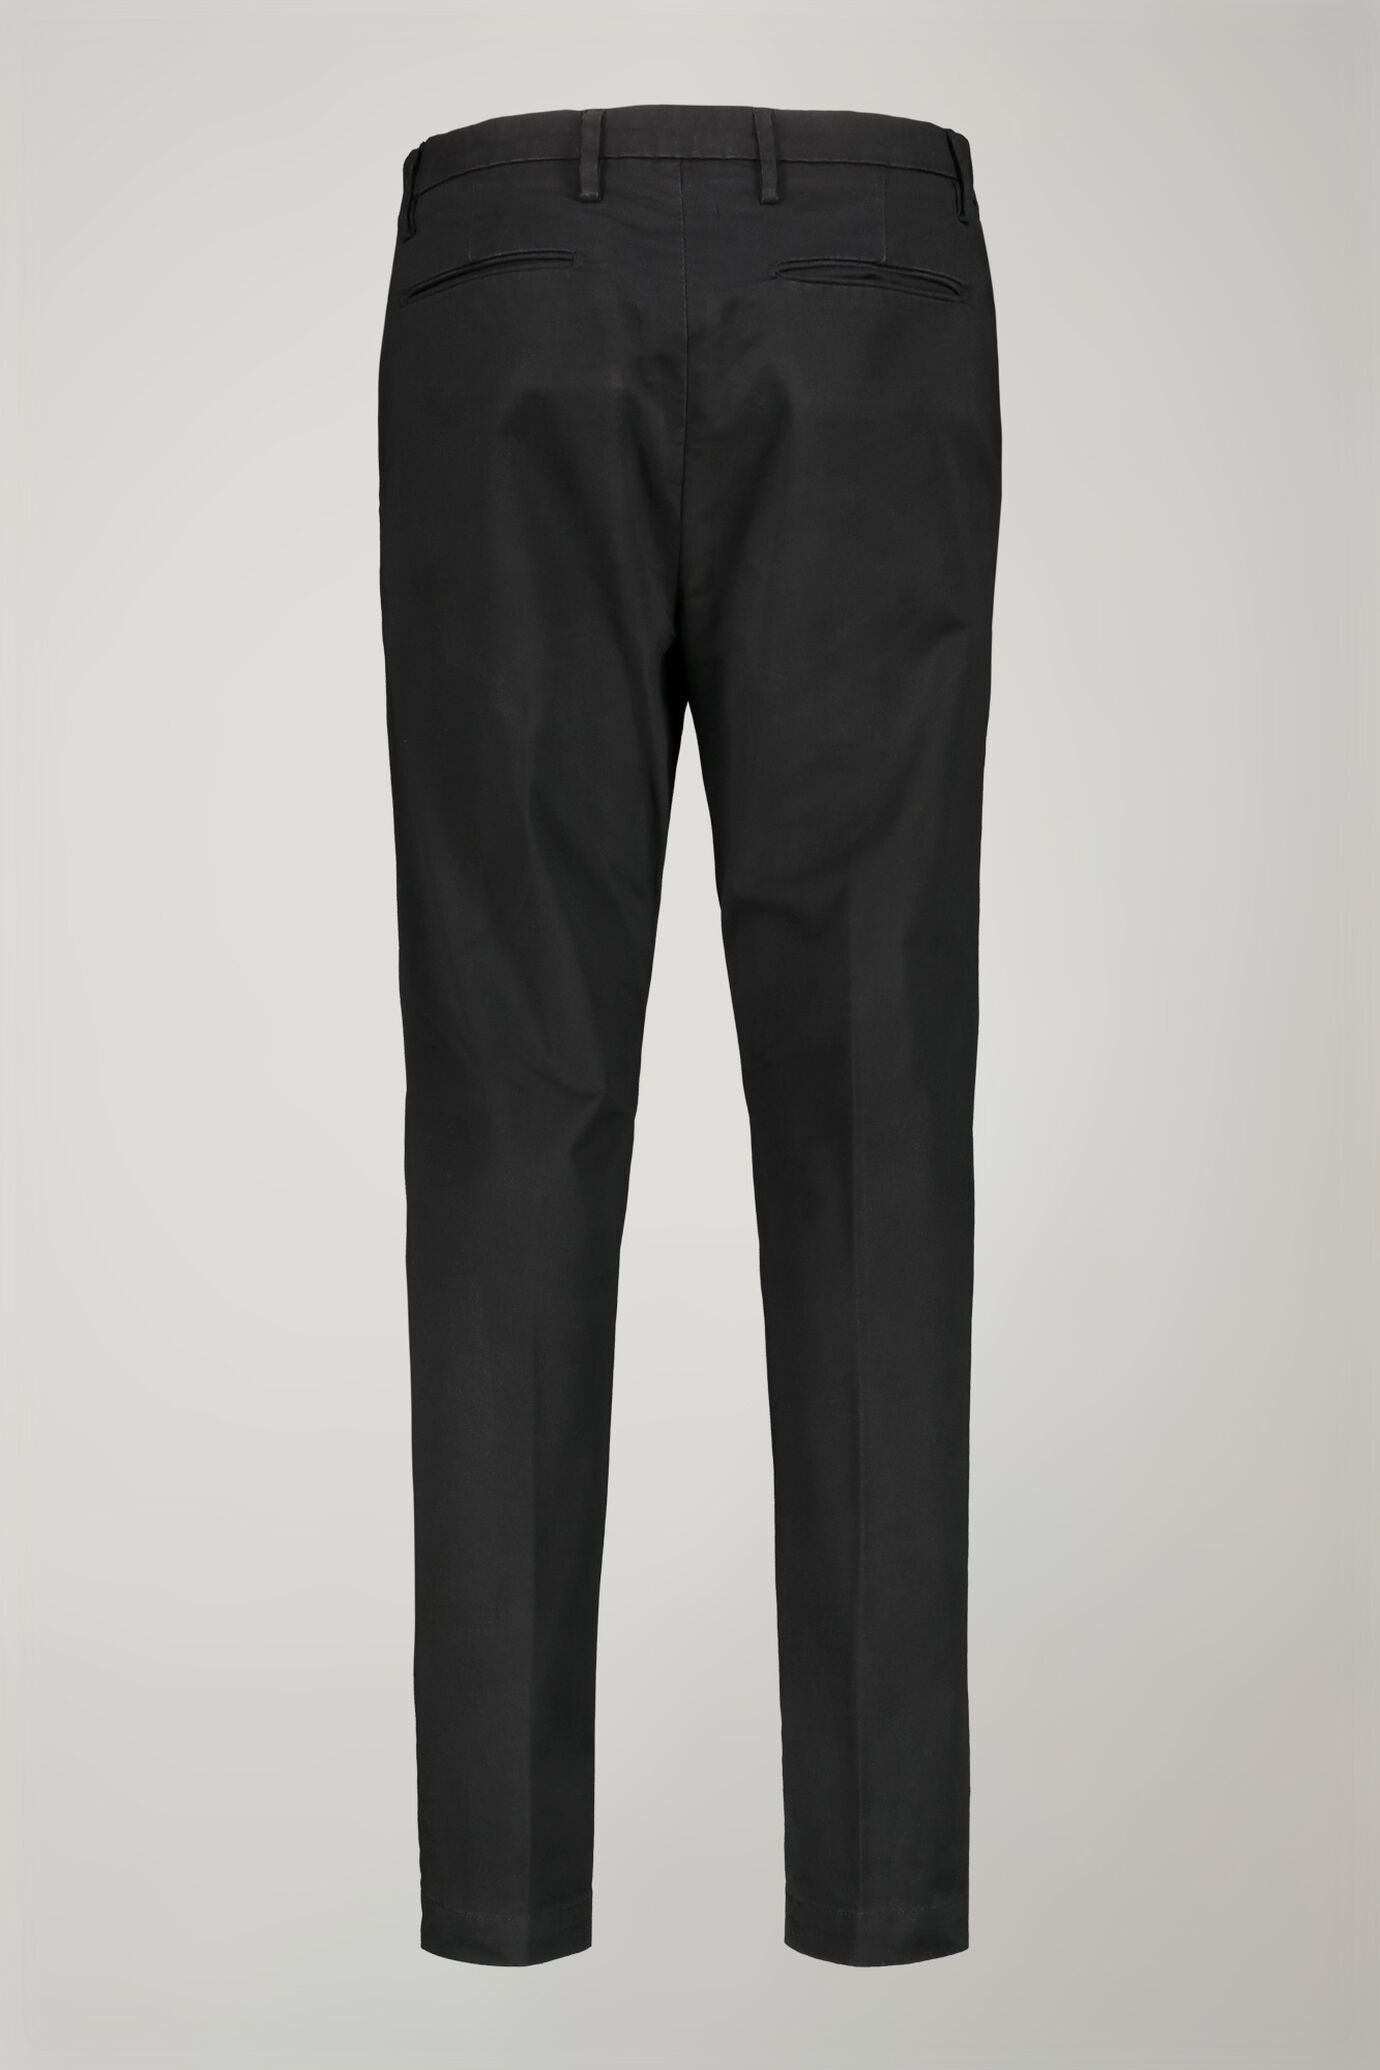 Pantalone chino uomo classico costruzione twill elasticizzato perfect fit image number 5